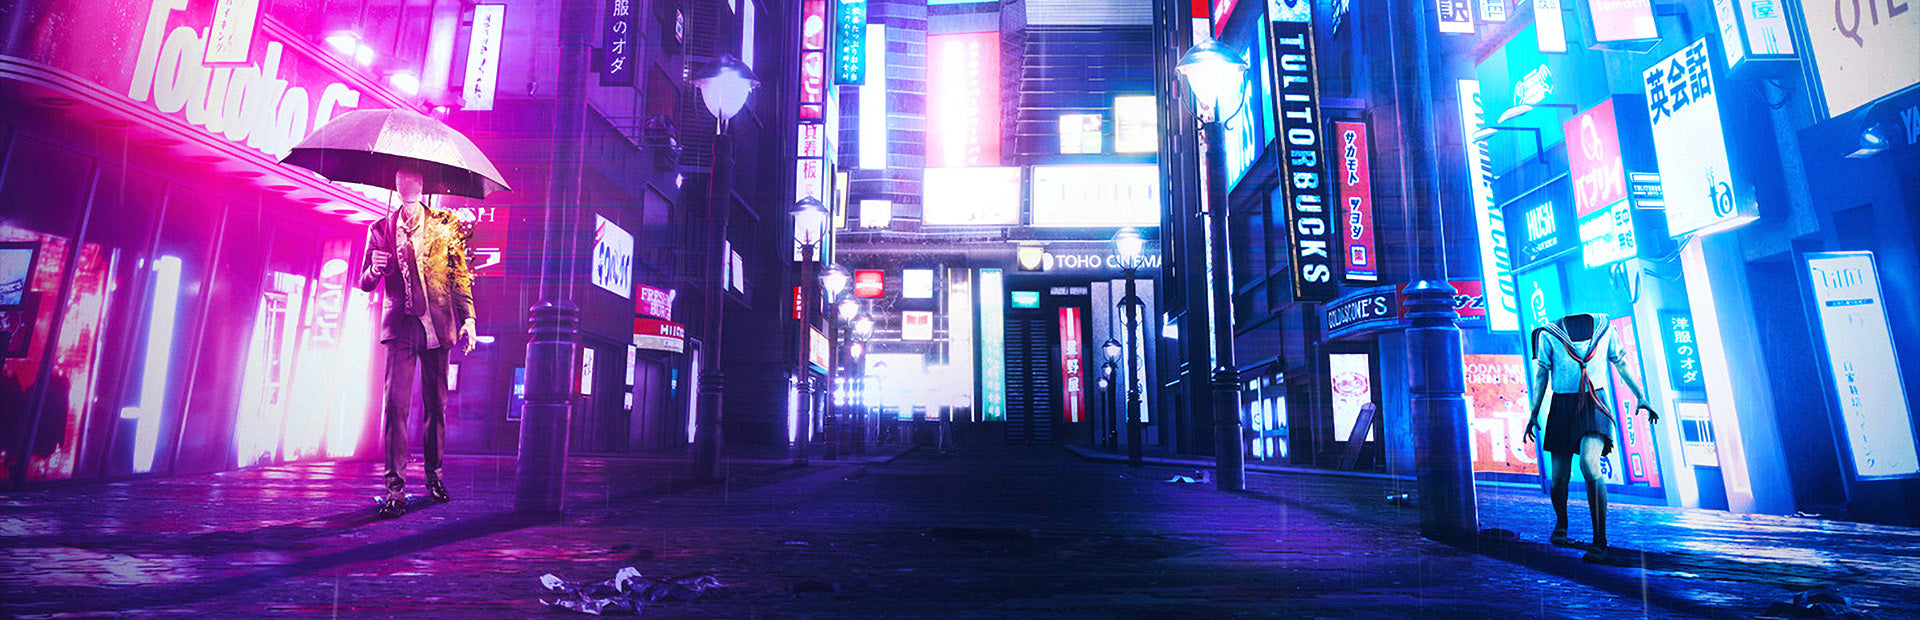 Ghostwire: Tokyo | PC | Steam Digital Download | Wallpaper